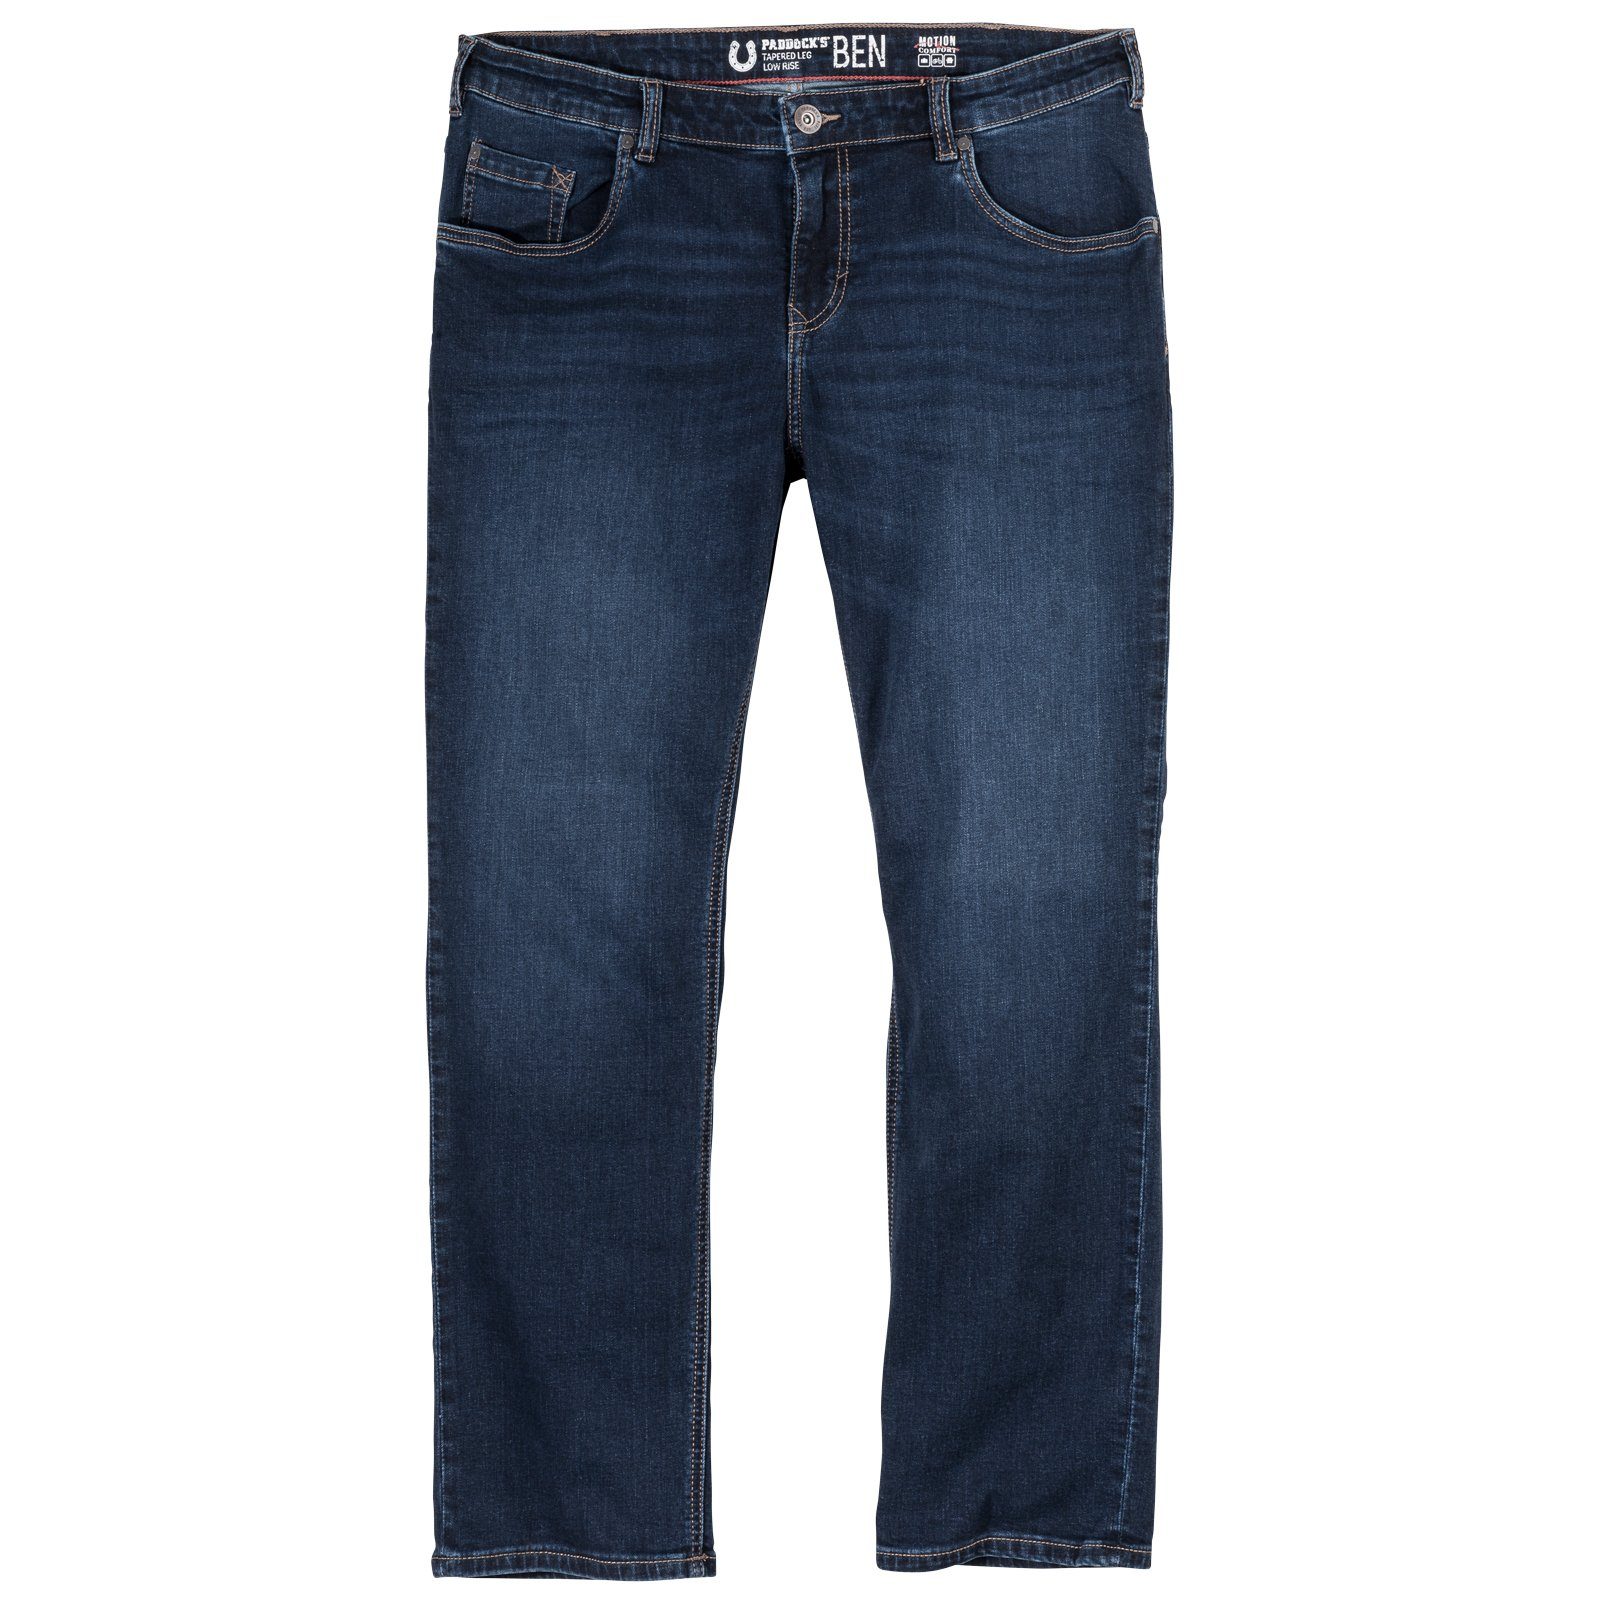 Paddock's Stretch-Jeans Paddock's Übergrößen Stretch-Jeans Ben dark blue use